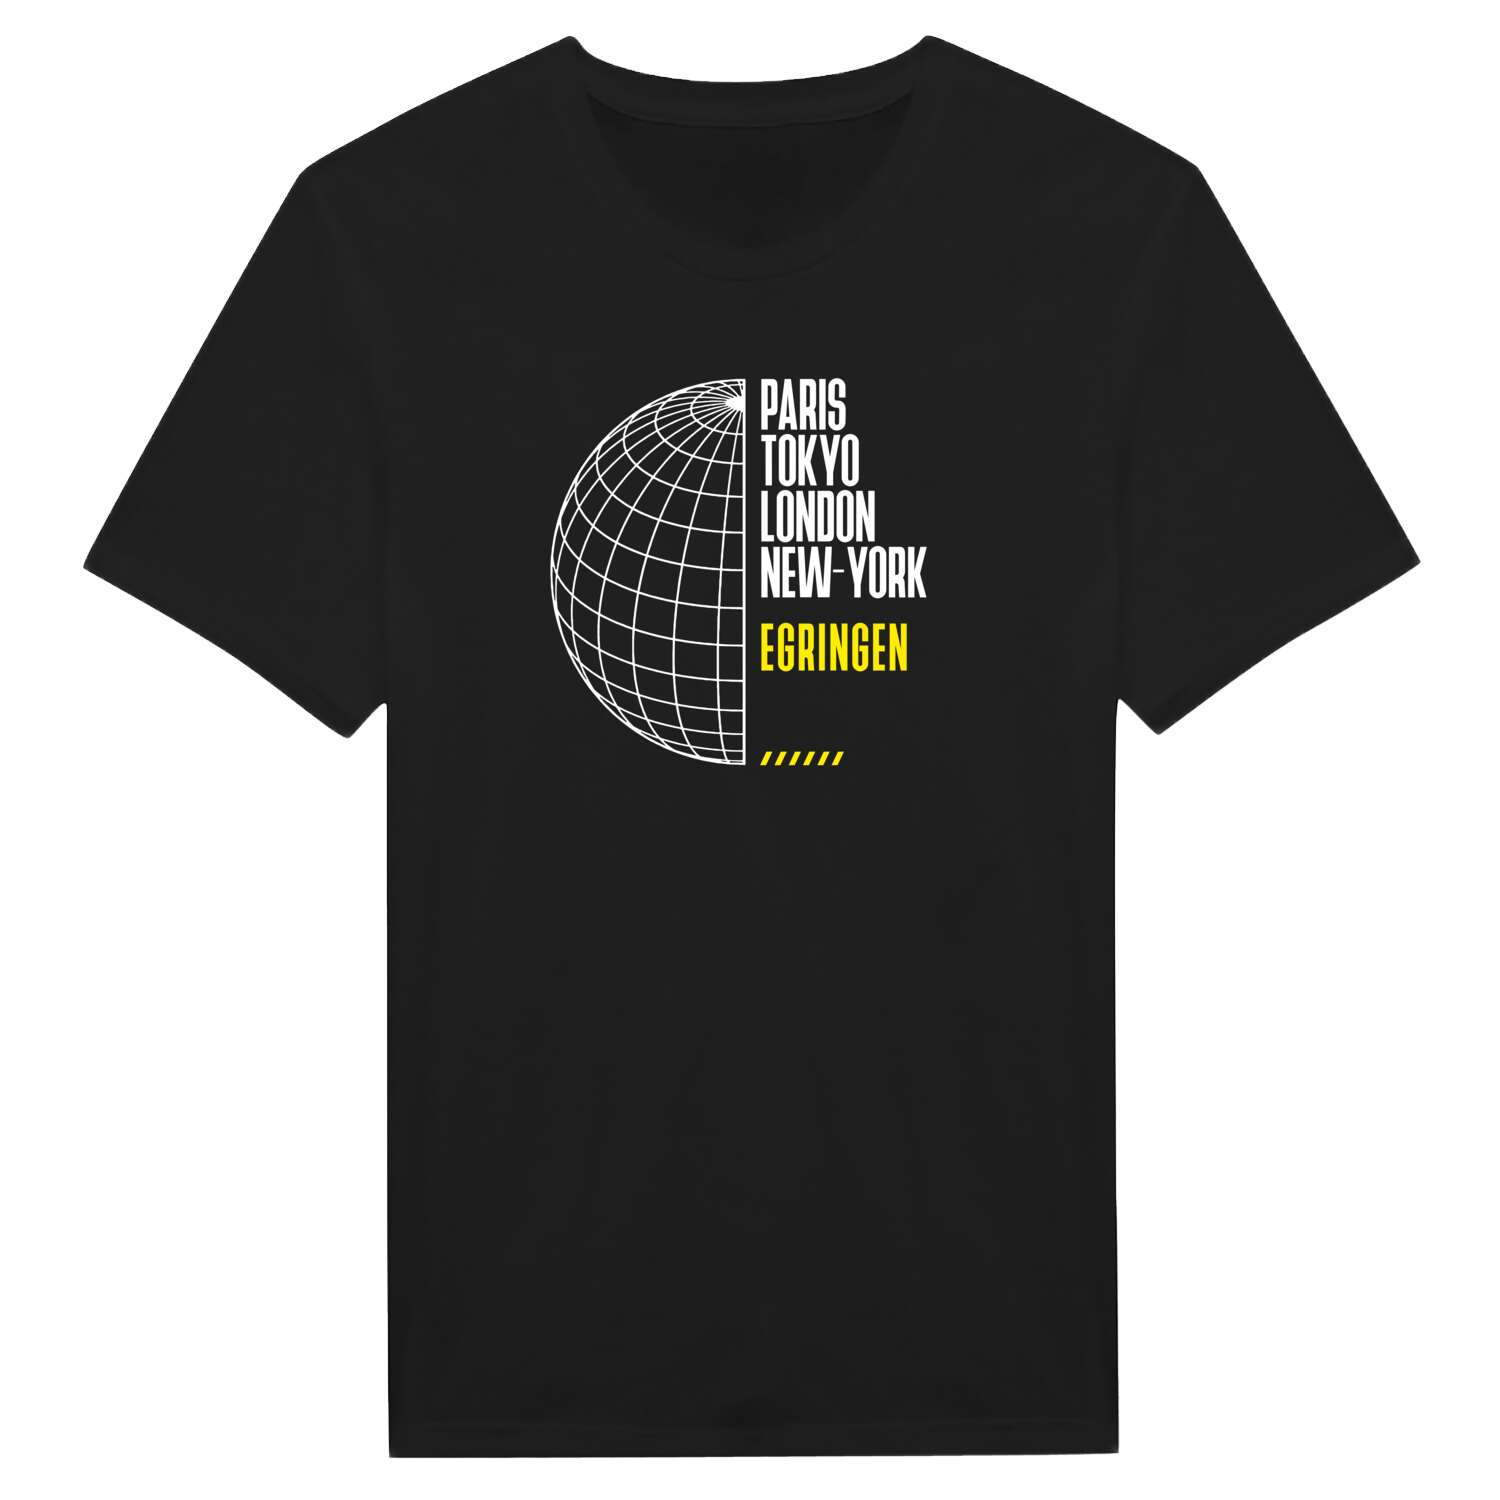 Egringen T-Shirt »Paris Tokyo London«